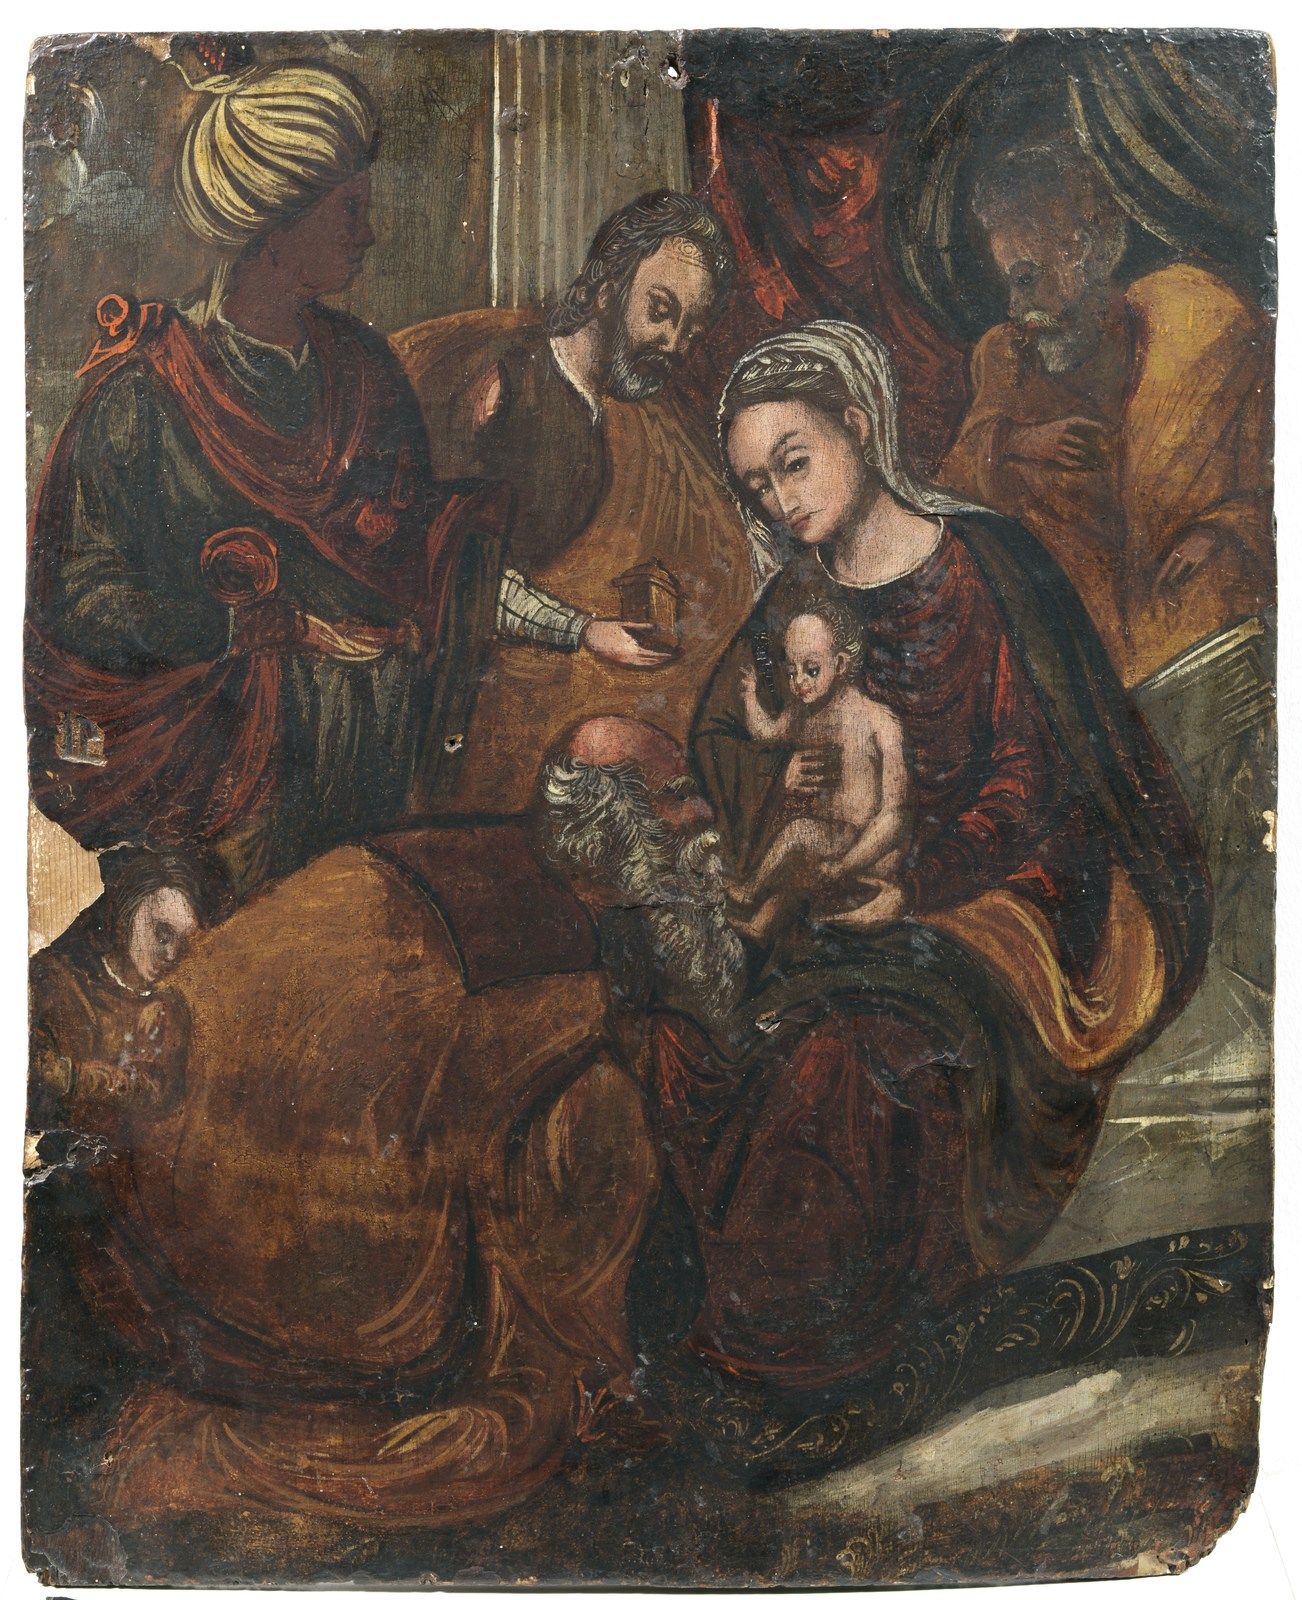 ARTISTA VENETO CRETESE DEL XVI SECOLO Adoration of the Magi. 16世纪威尼托-克里特艺术家的 "Ma&hellip;